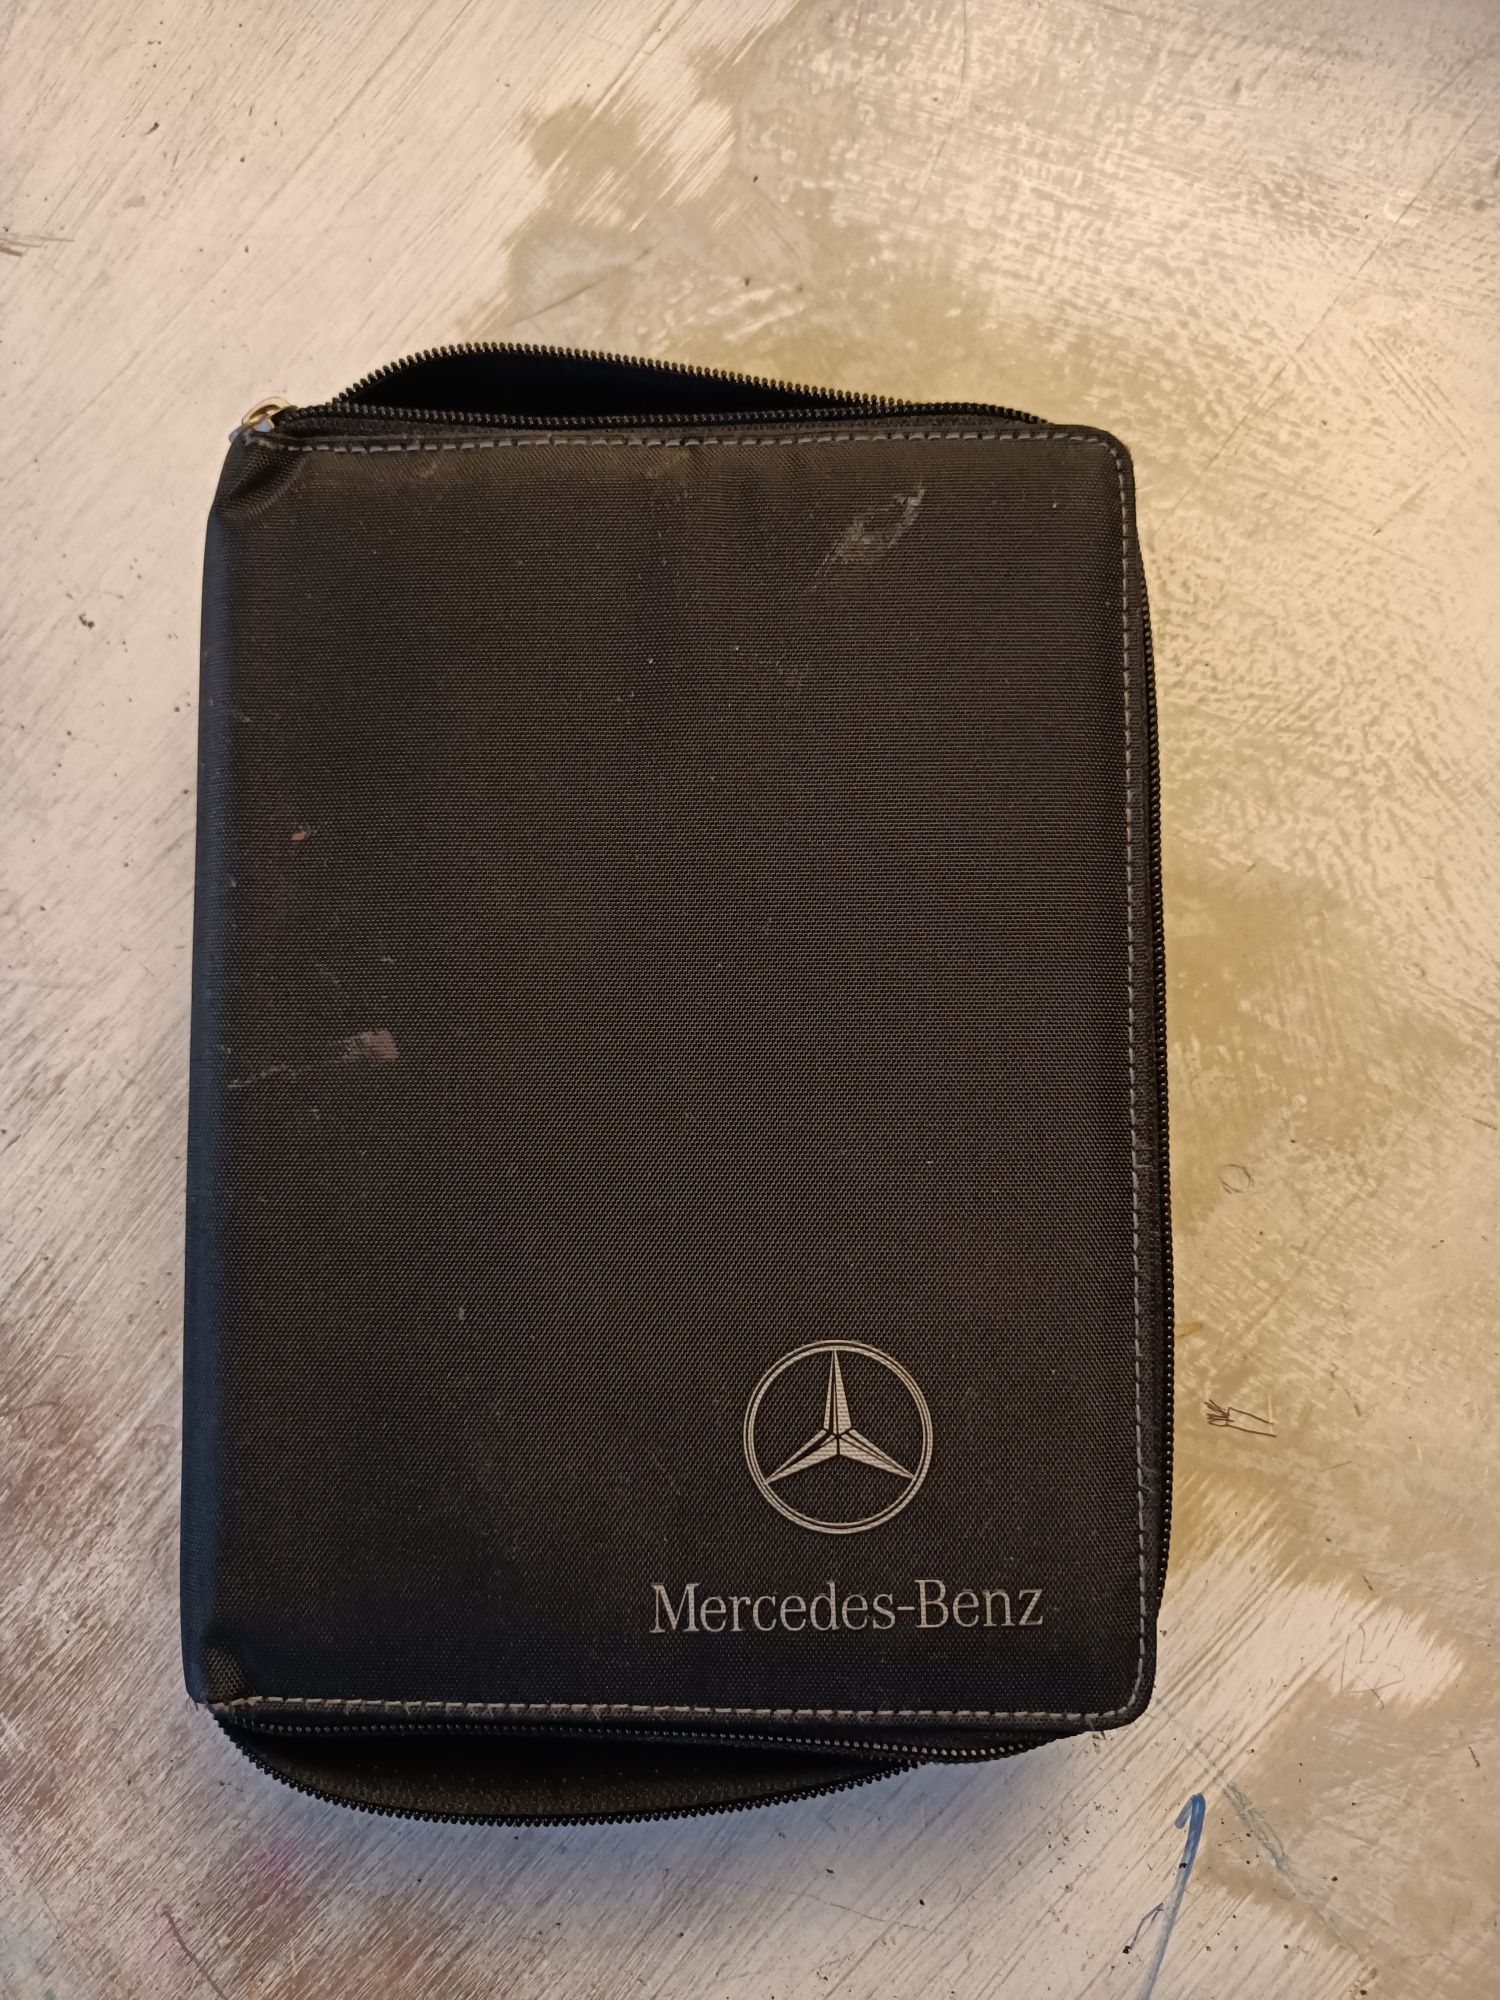 Instrukcja obsługi Mercedes Benz klasa B - niemiecka